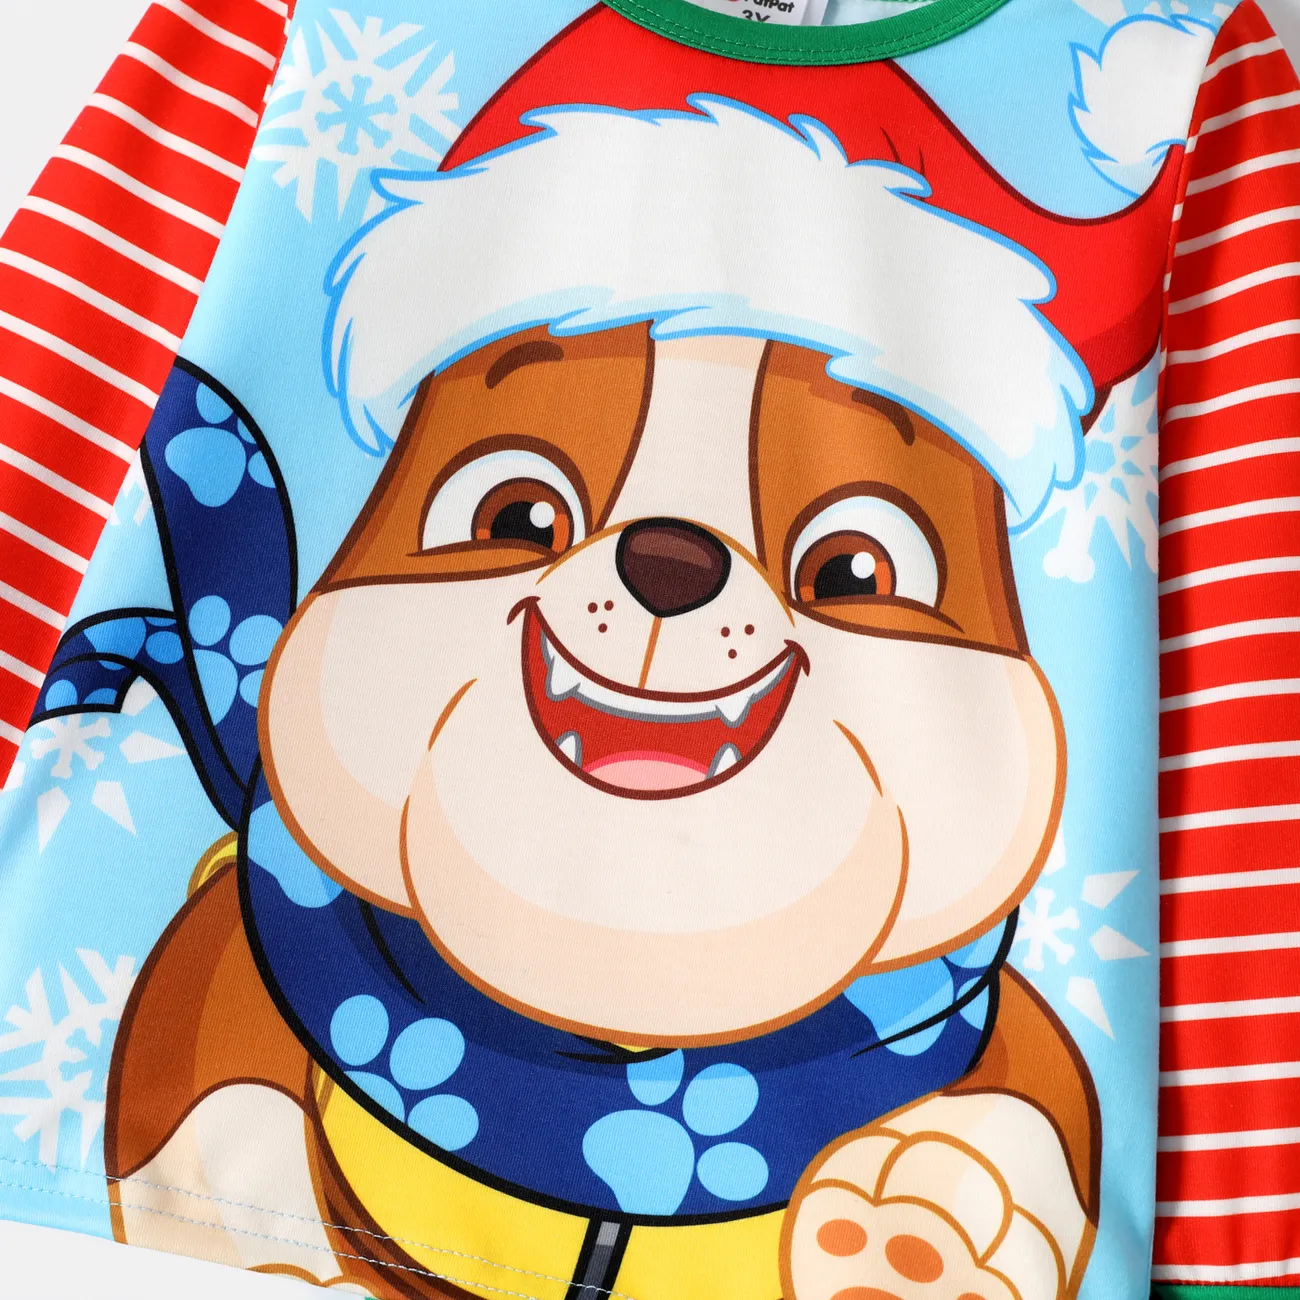 Helfer auf vier Pfoten Weihnachten 2 Stück Kleinkinder Unisex Stoffnähte Kindlich Hund T-Shirt-Sets rot-Weiss big image 1